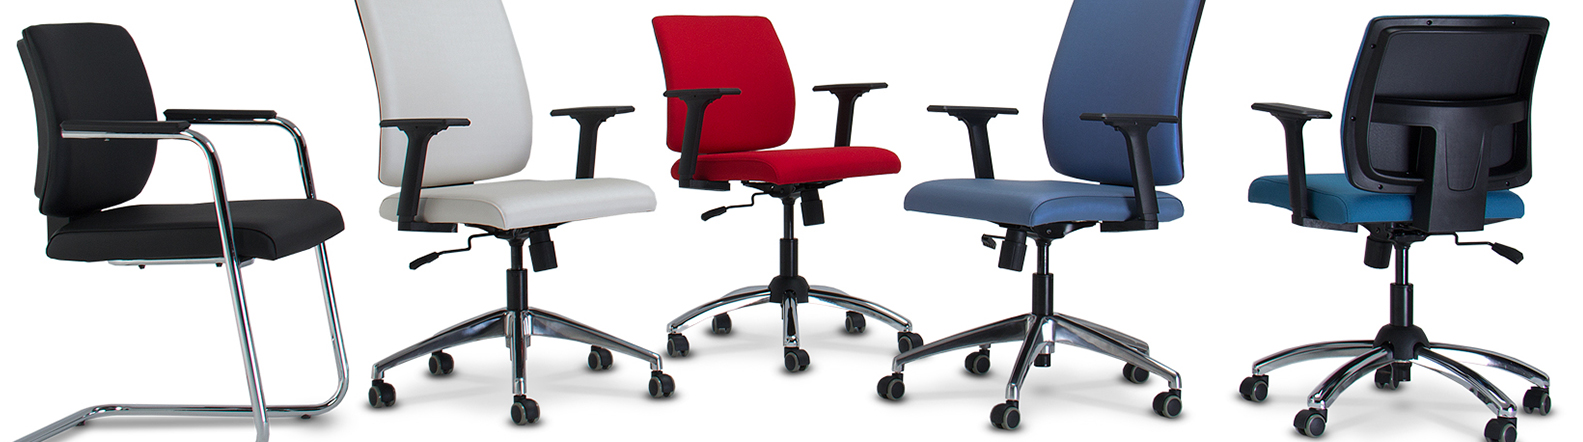 Conforto e ergonomia para o seu trabalho - cadeiras escritório